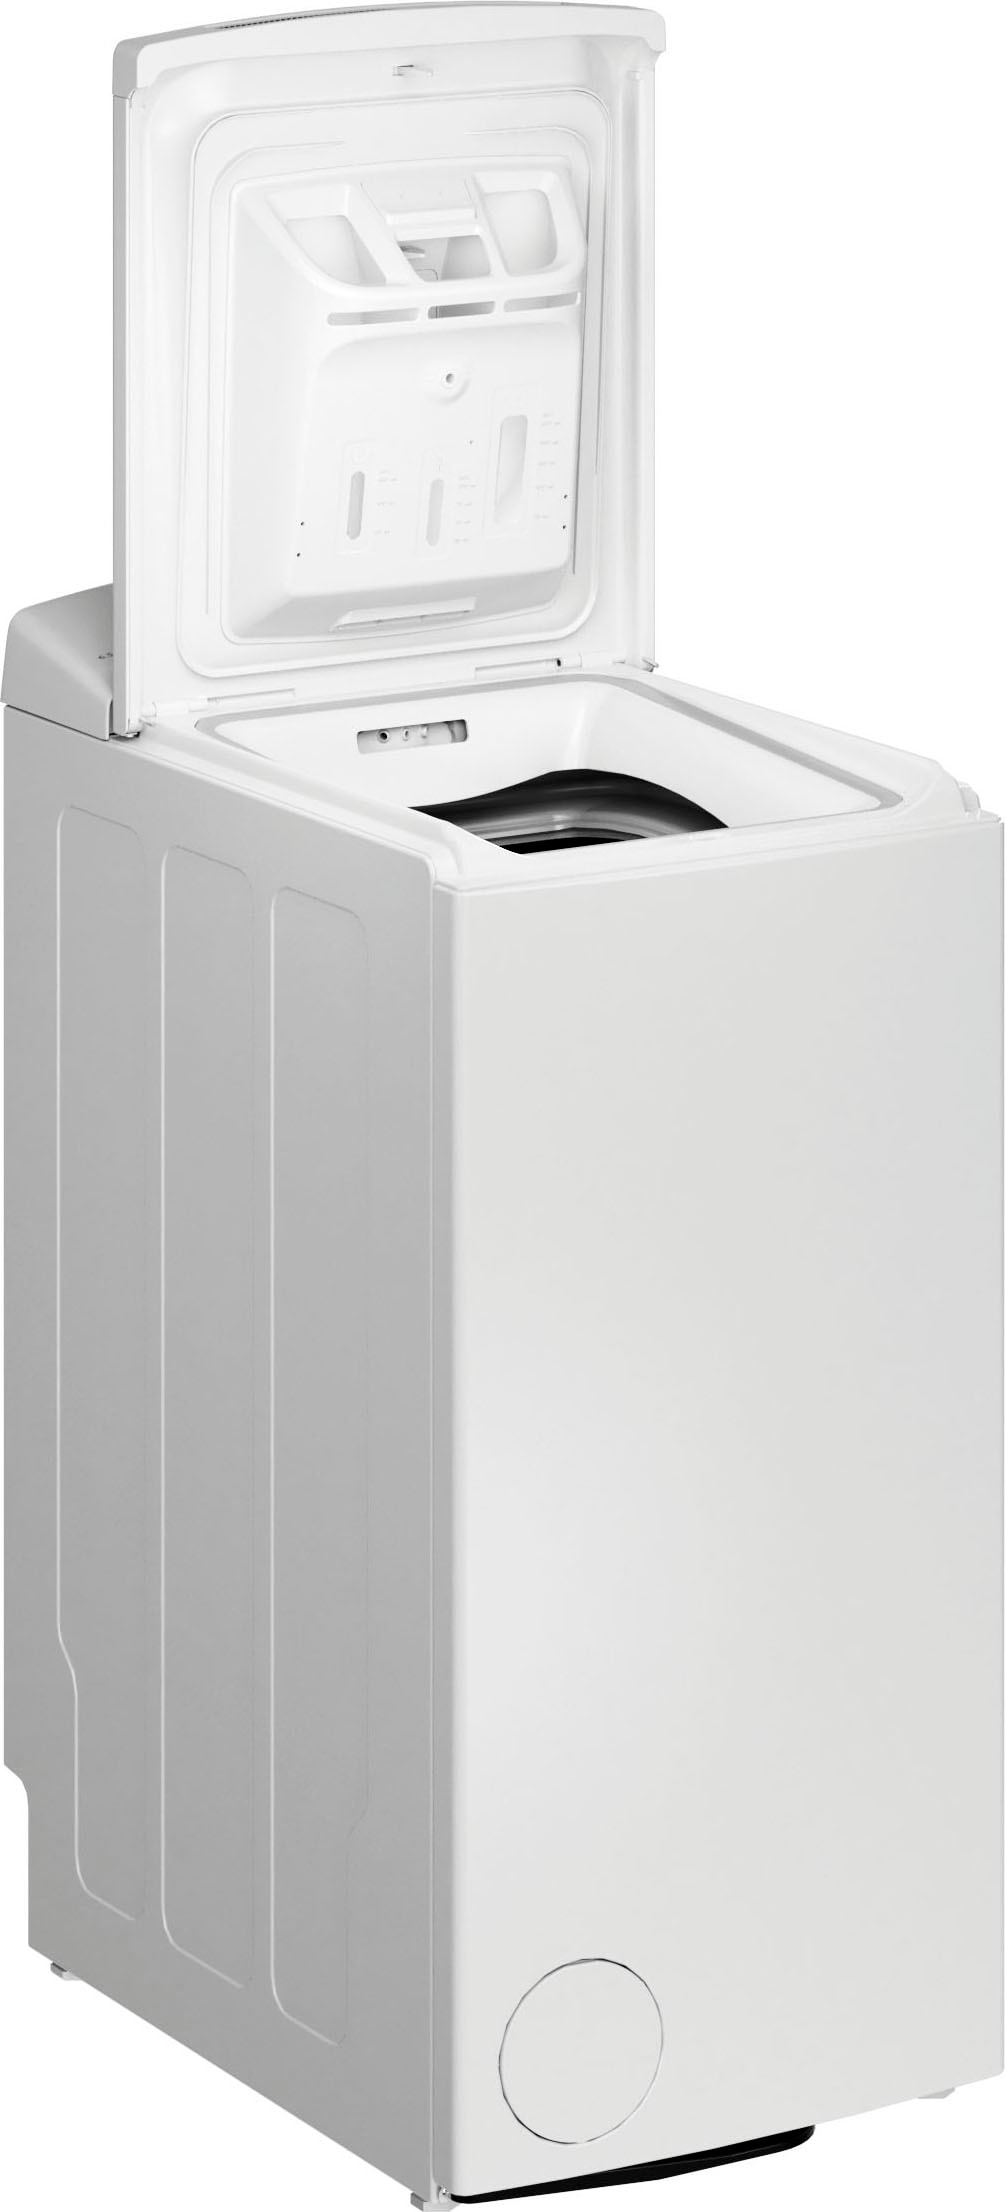 BAUKNECHT Waschmaschine Toplader »WMT Zen 6513 C SD«, WMT Zen 6513 C SD, 6,5 kg, 1300 U/min